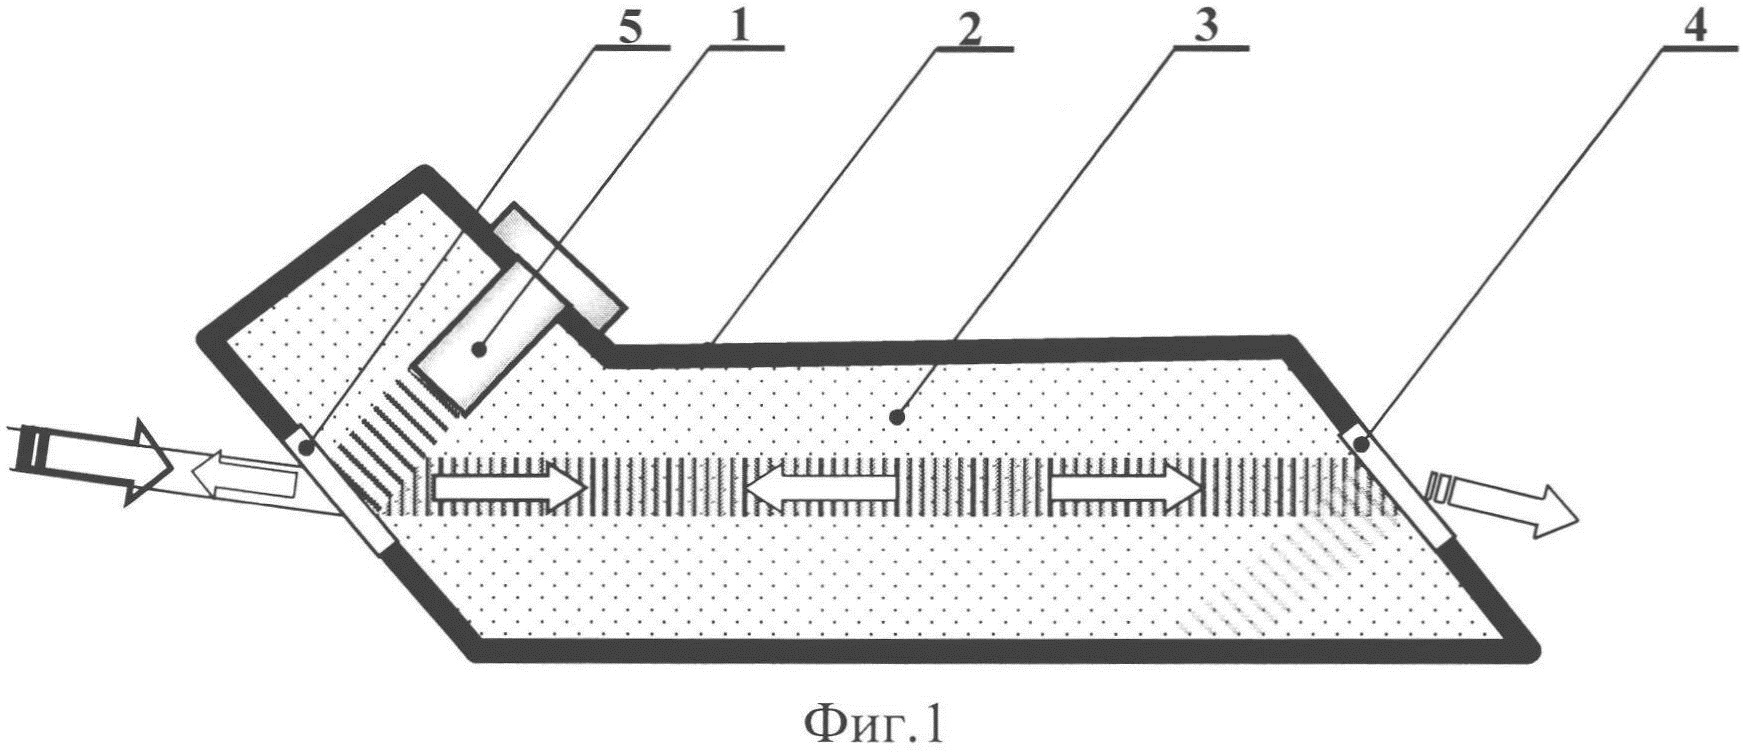 Акустооптическая ячейка для реализации обратной коллинеарной дифракции терагерцевого излучения на ультразвуковой волне в жидкости